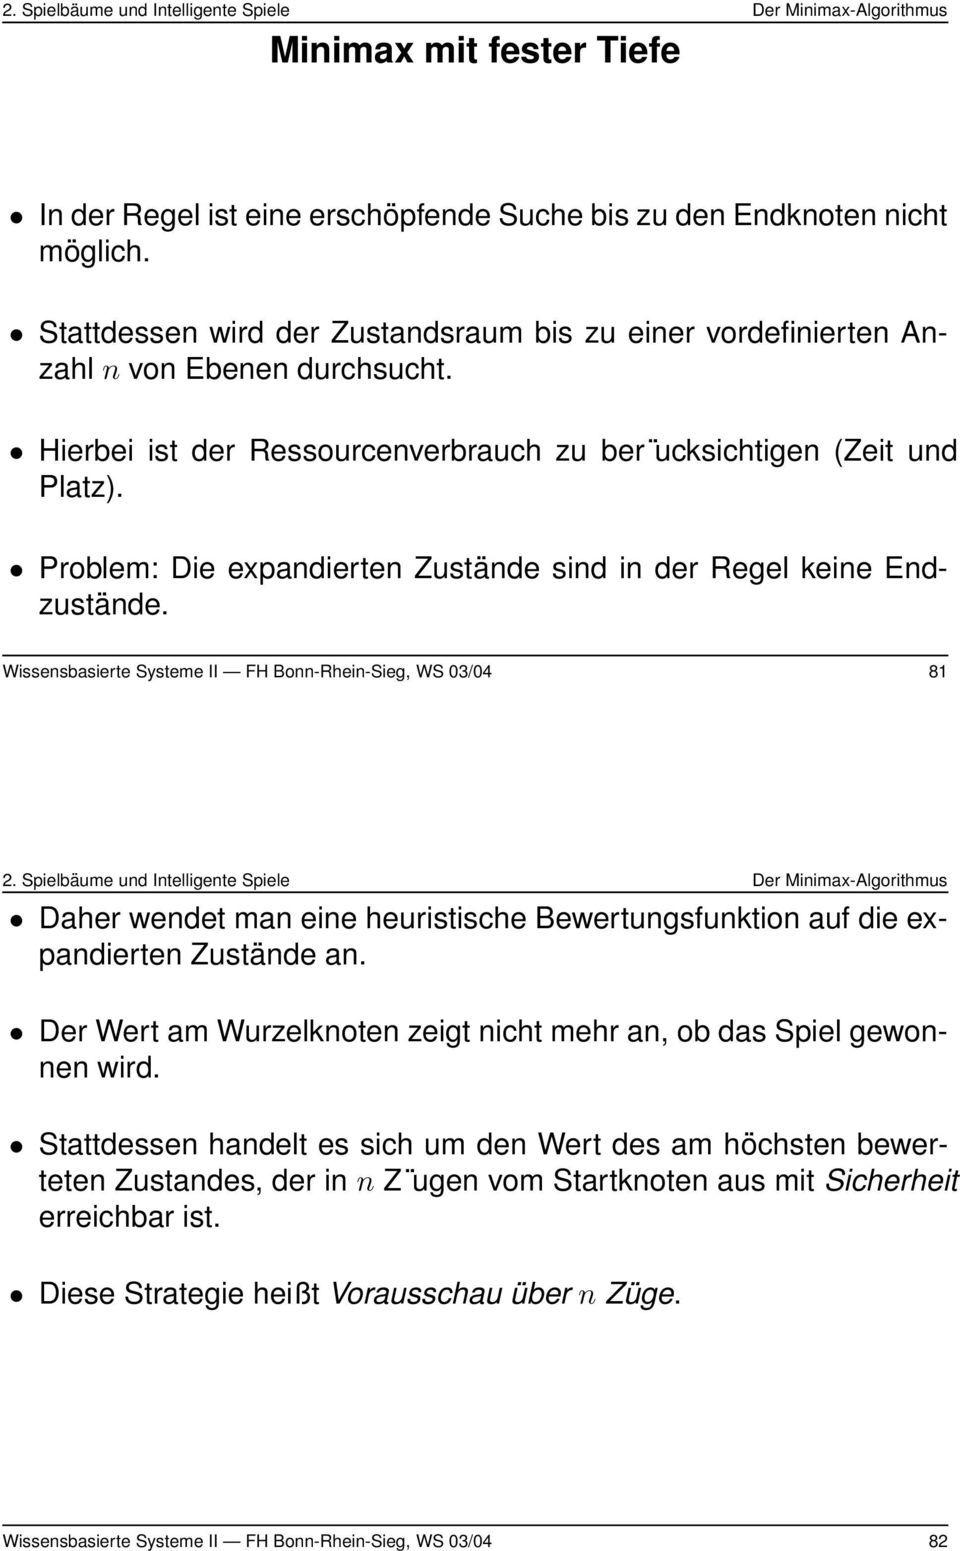 Wissensbasierte Systeme II FH Bonn-Rhein-Sieg, WS 03/04 81 Daher wendet man eine heuristische Bewertungsfunktion auf die expandierten Zustände an.